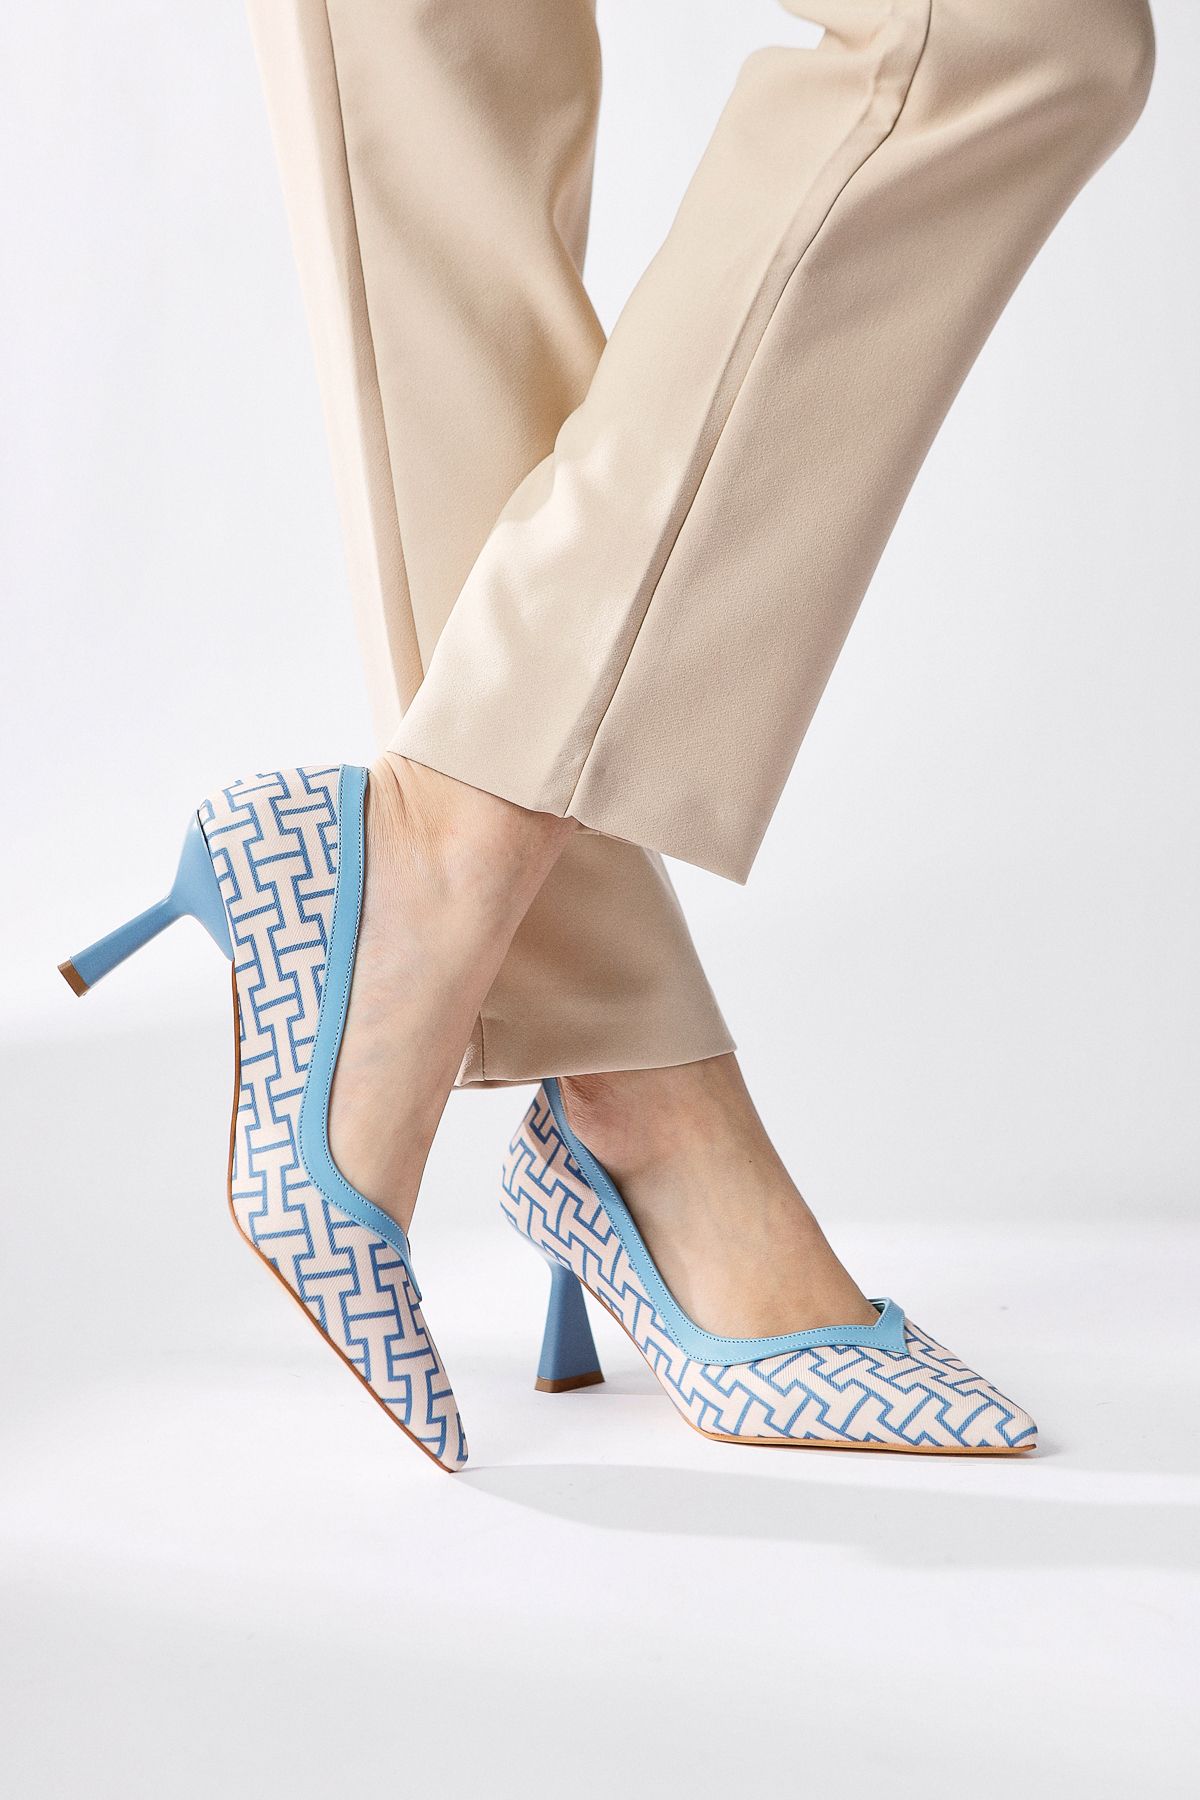 Limoya Lottis Mavi Geometrik Desenli Siviri Burunlu Topuklu Ayakkabı